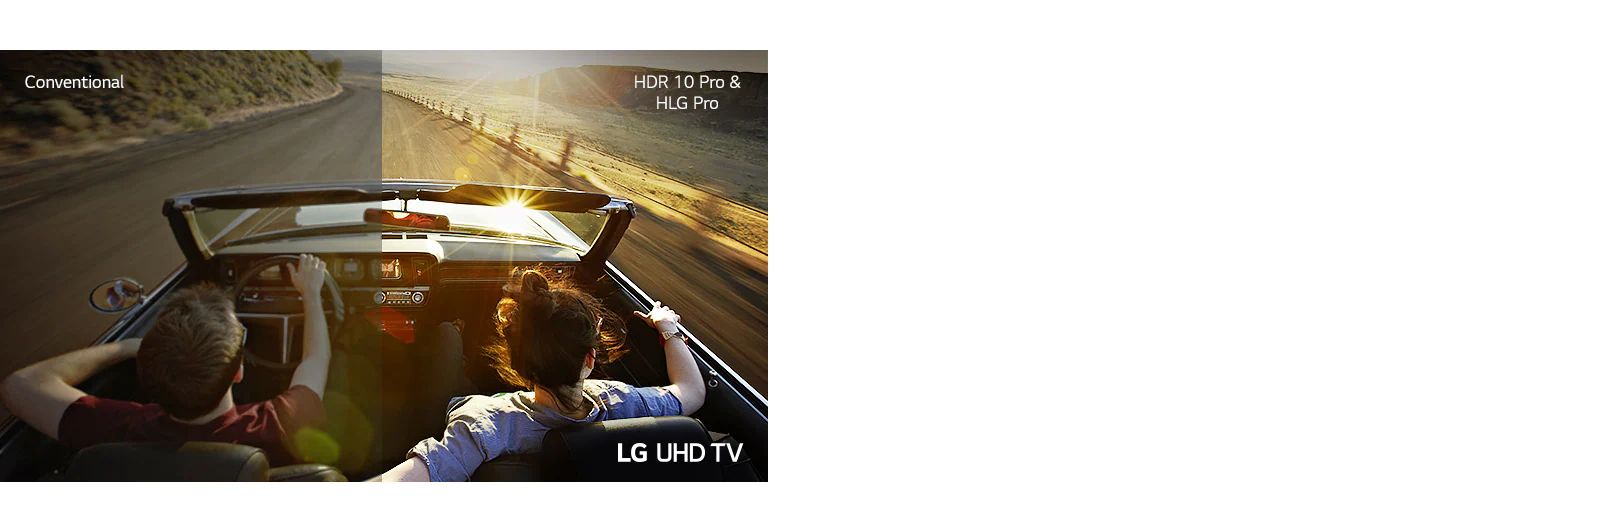 LG 43UN7300PTC HDR 10 Pro HLG Pro